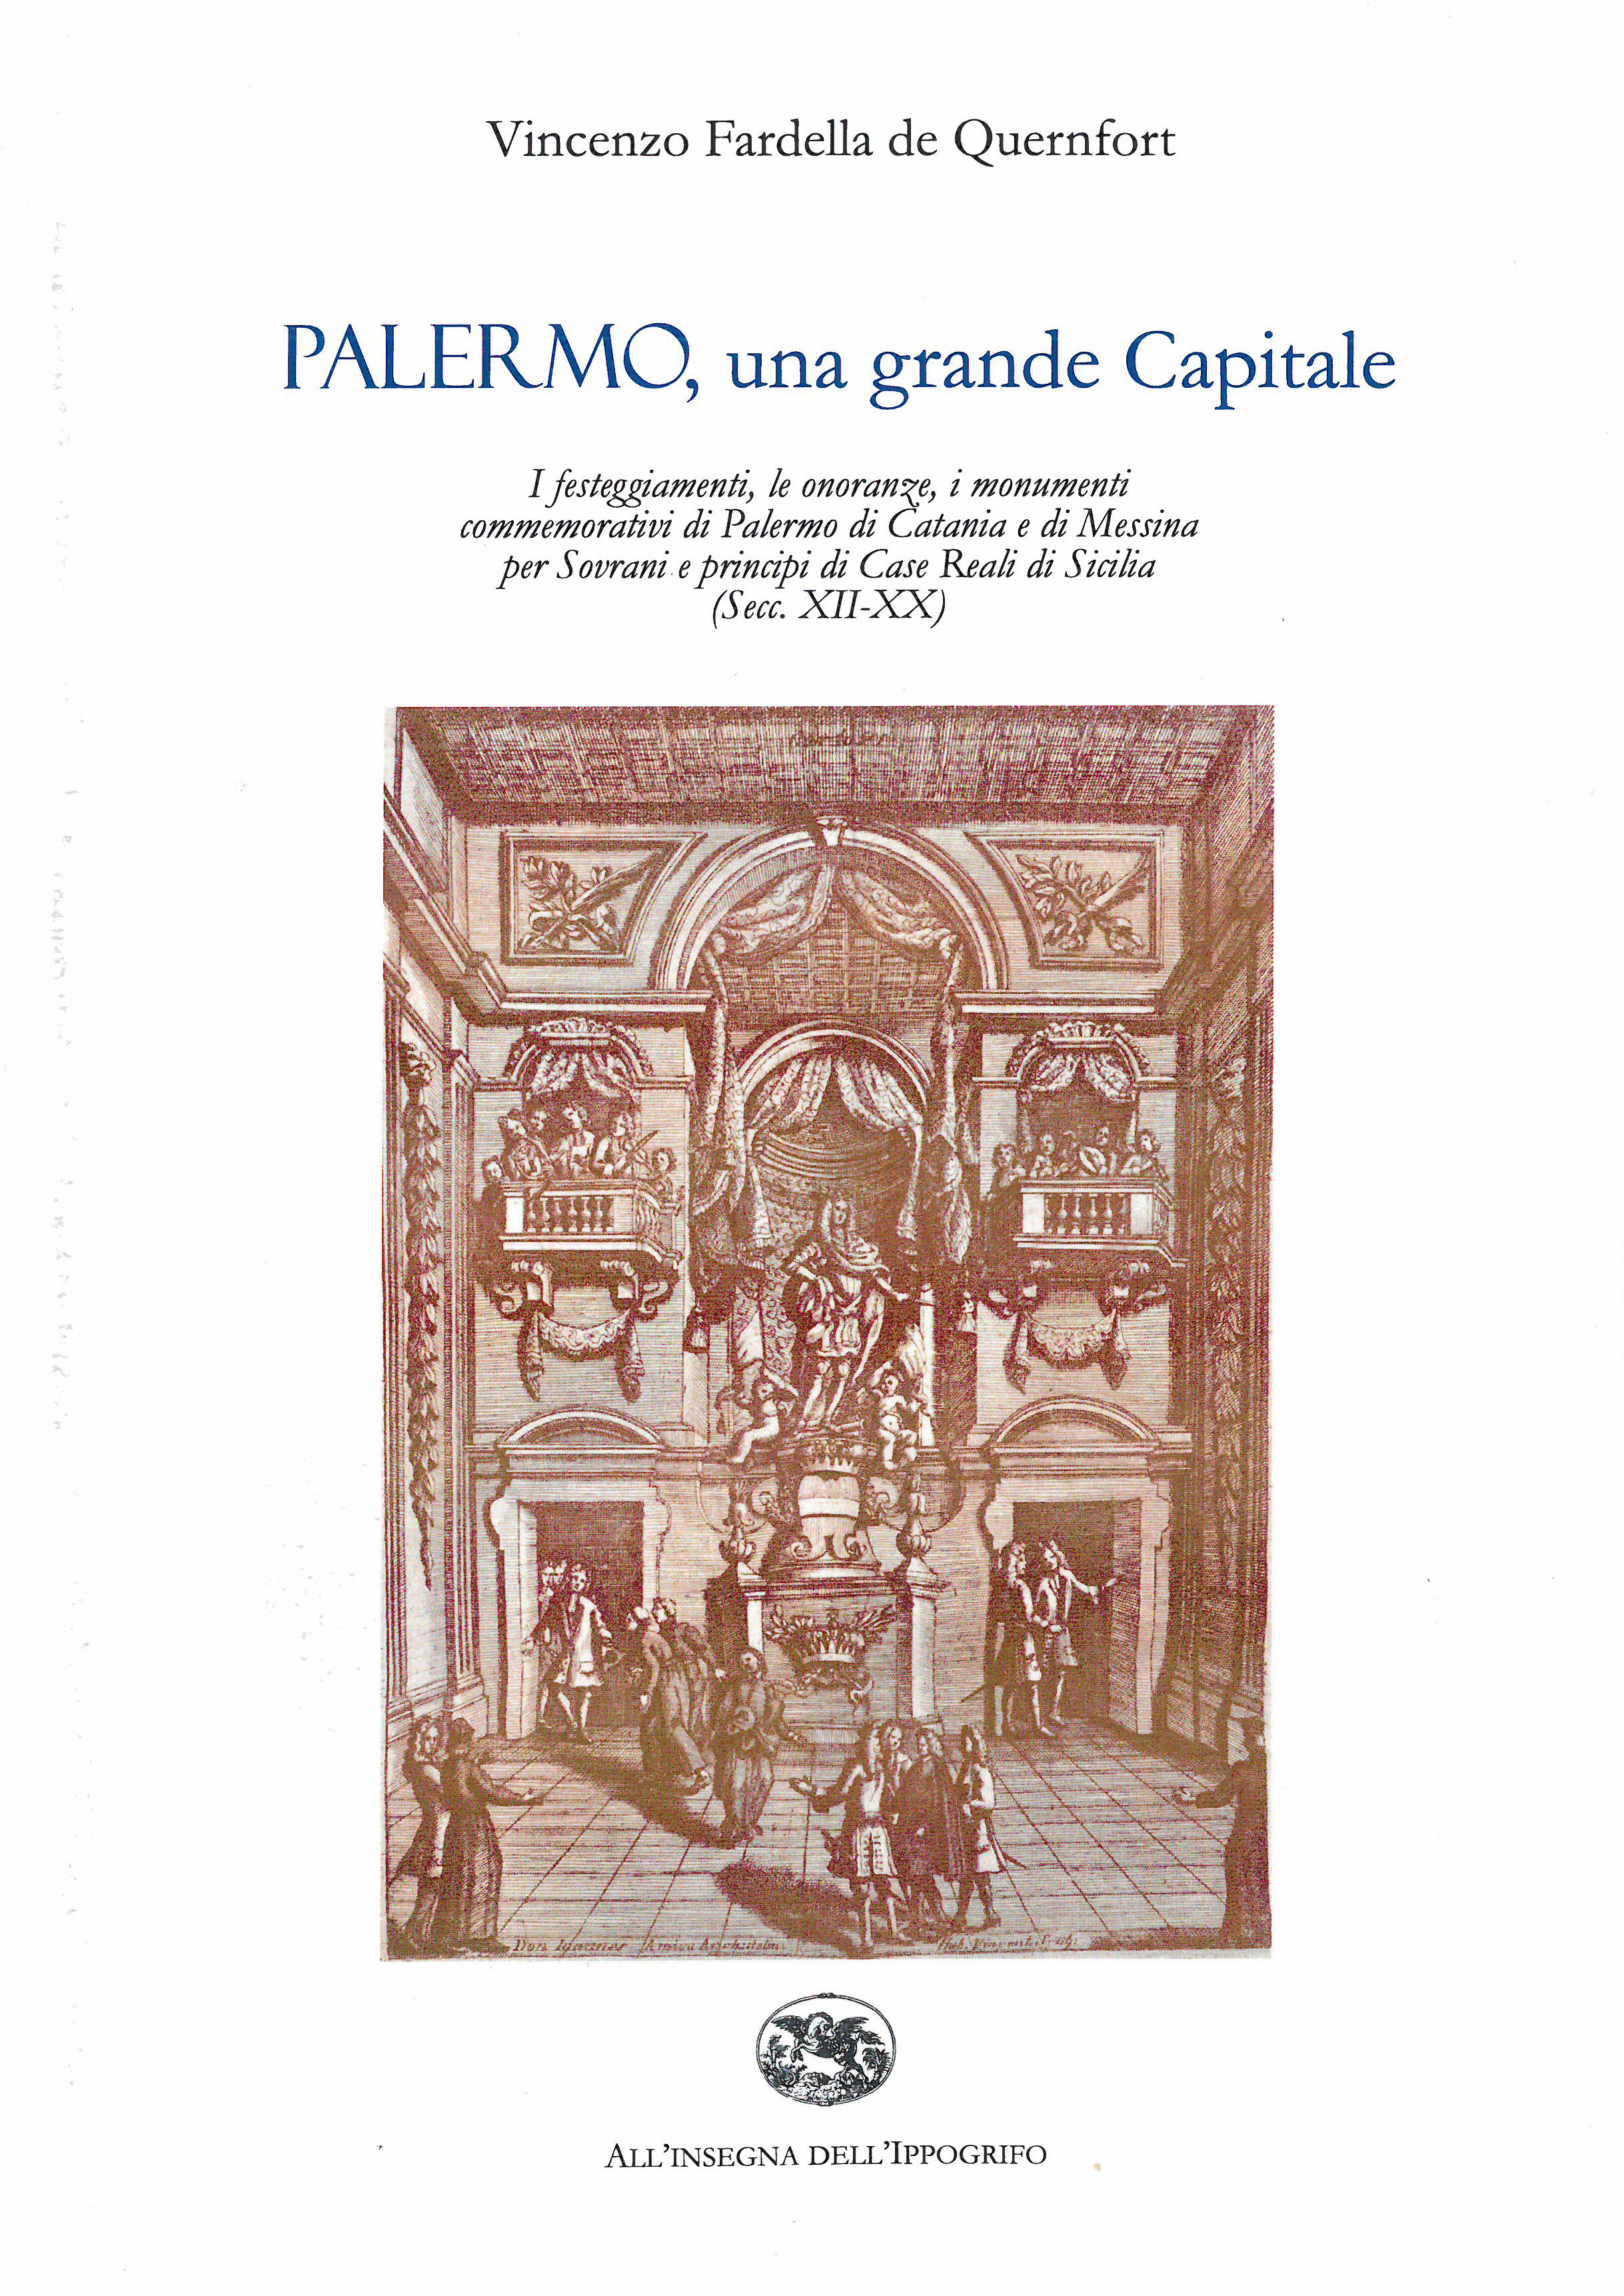 Pubblichiamo la Prefazione di Giulia Sommariva al libro "PALERMO, una grande Capitale" di Vincenzo Fardella Quernfort  (ed. All'Insegna dell'Ippogrifo)